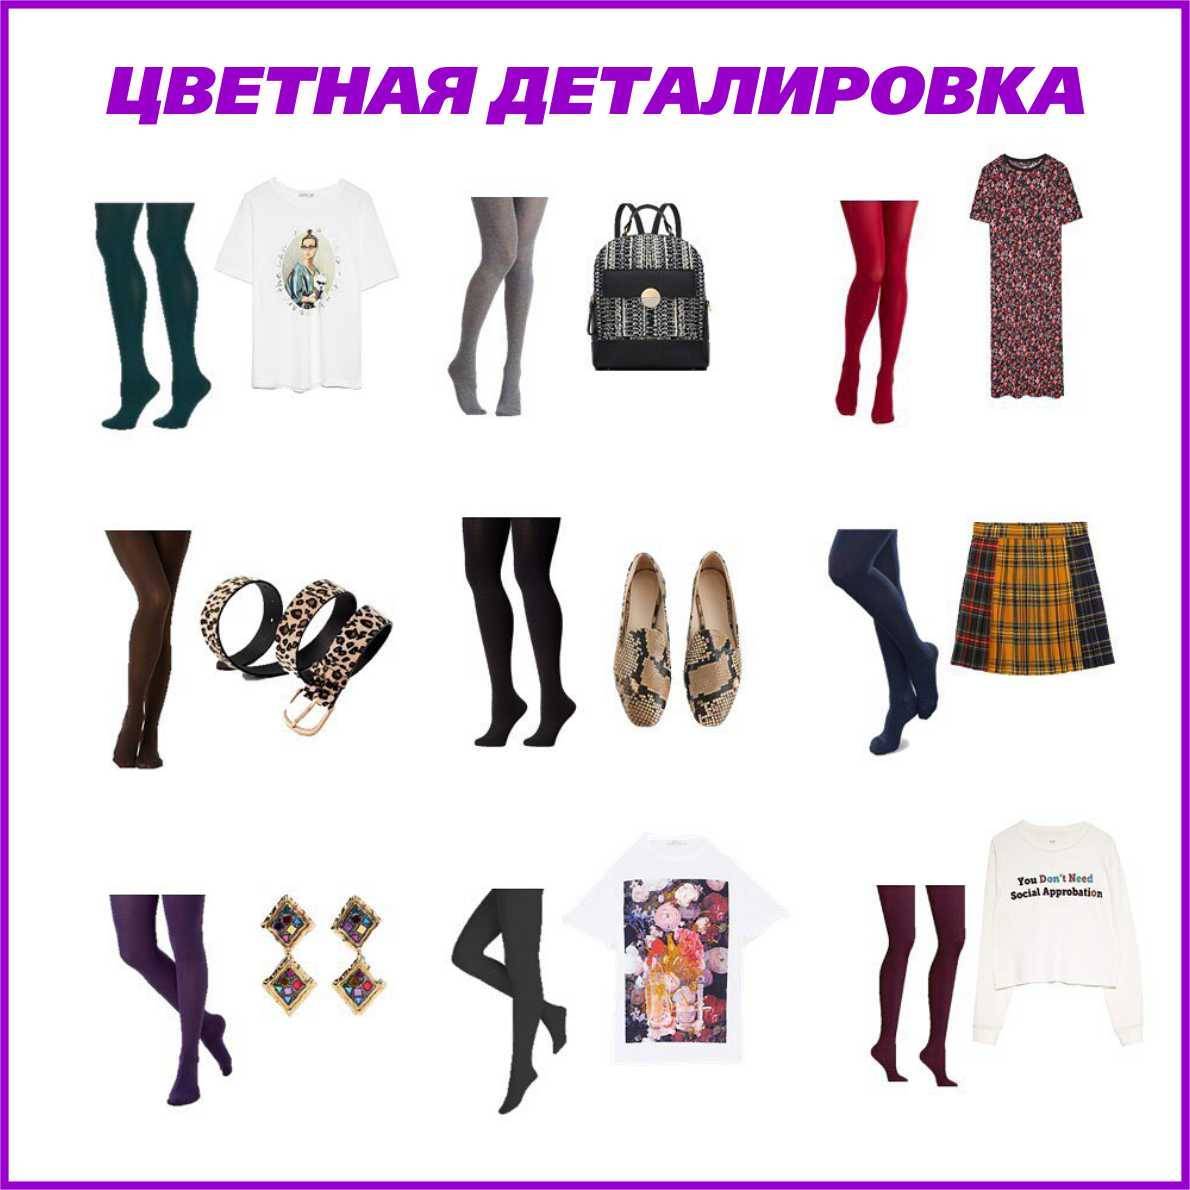 Как выбрать колготки - стилист-имиджмейкер дарья стеценко